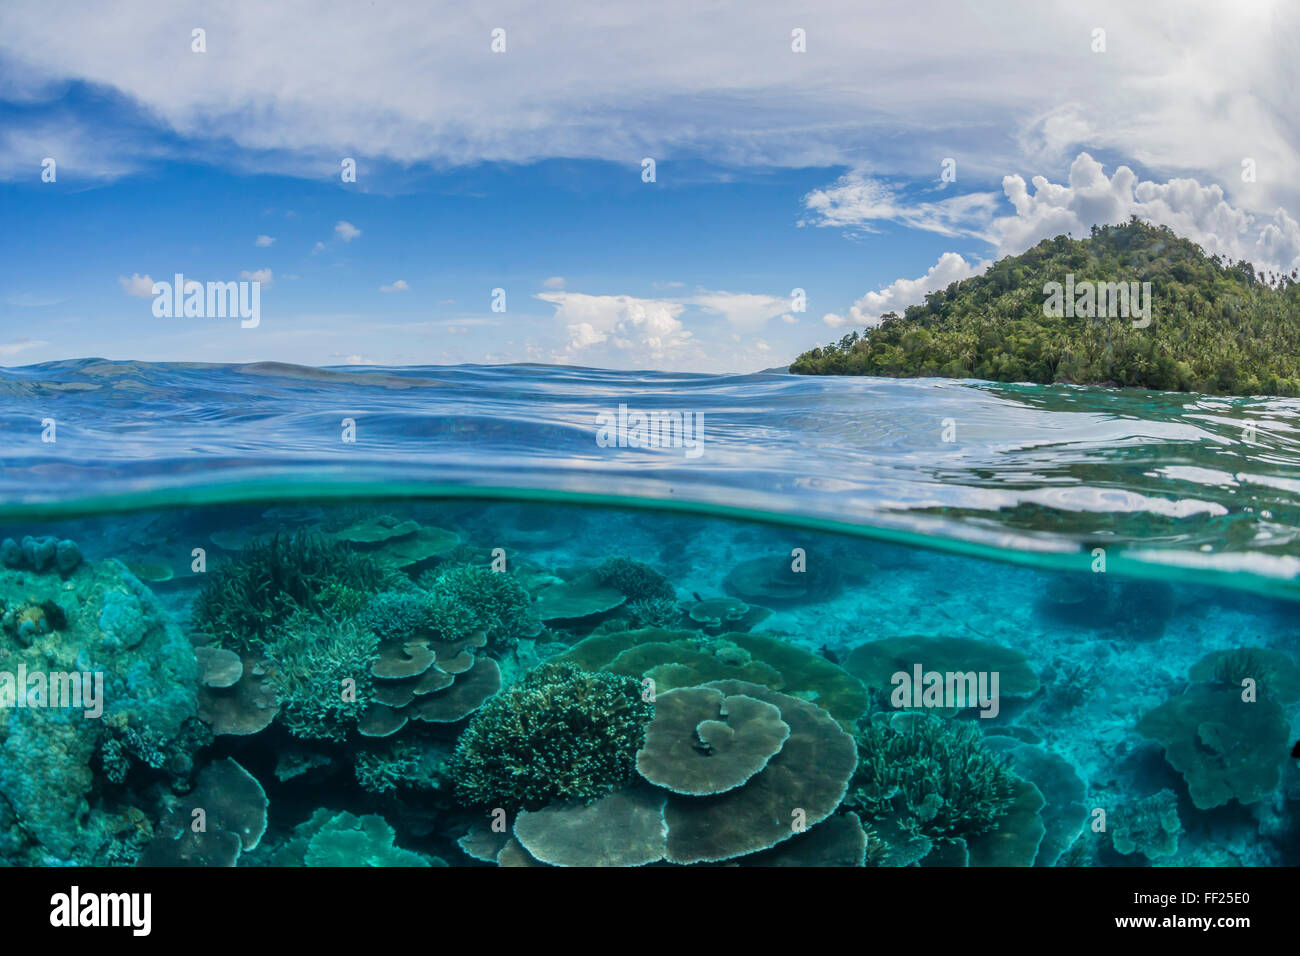 La moitié supérieure et la moitié inférieure vue de coraux à l'île de Pulau Setaih, archipel Natuna, Indonésie, Asie du Sud, Asie Banque D'Images